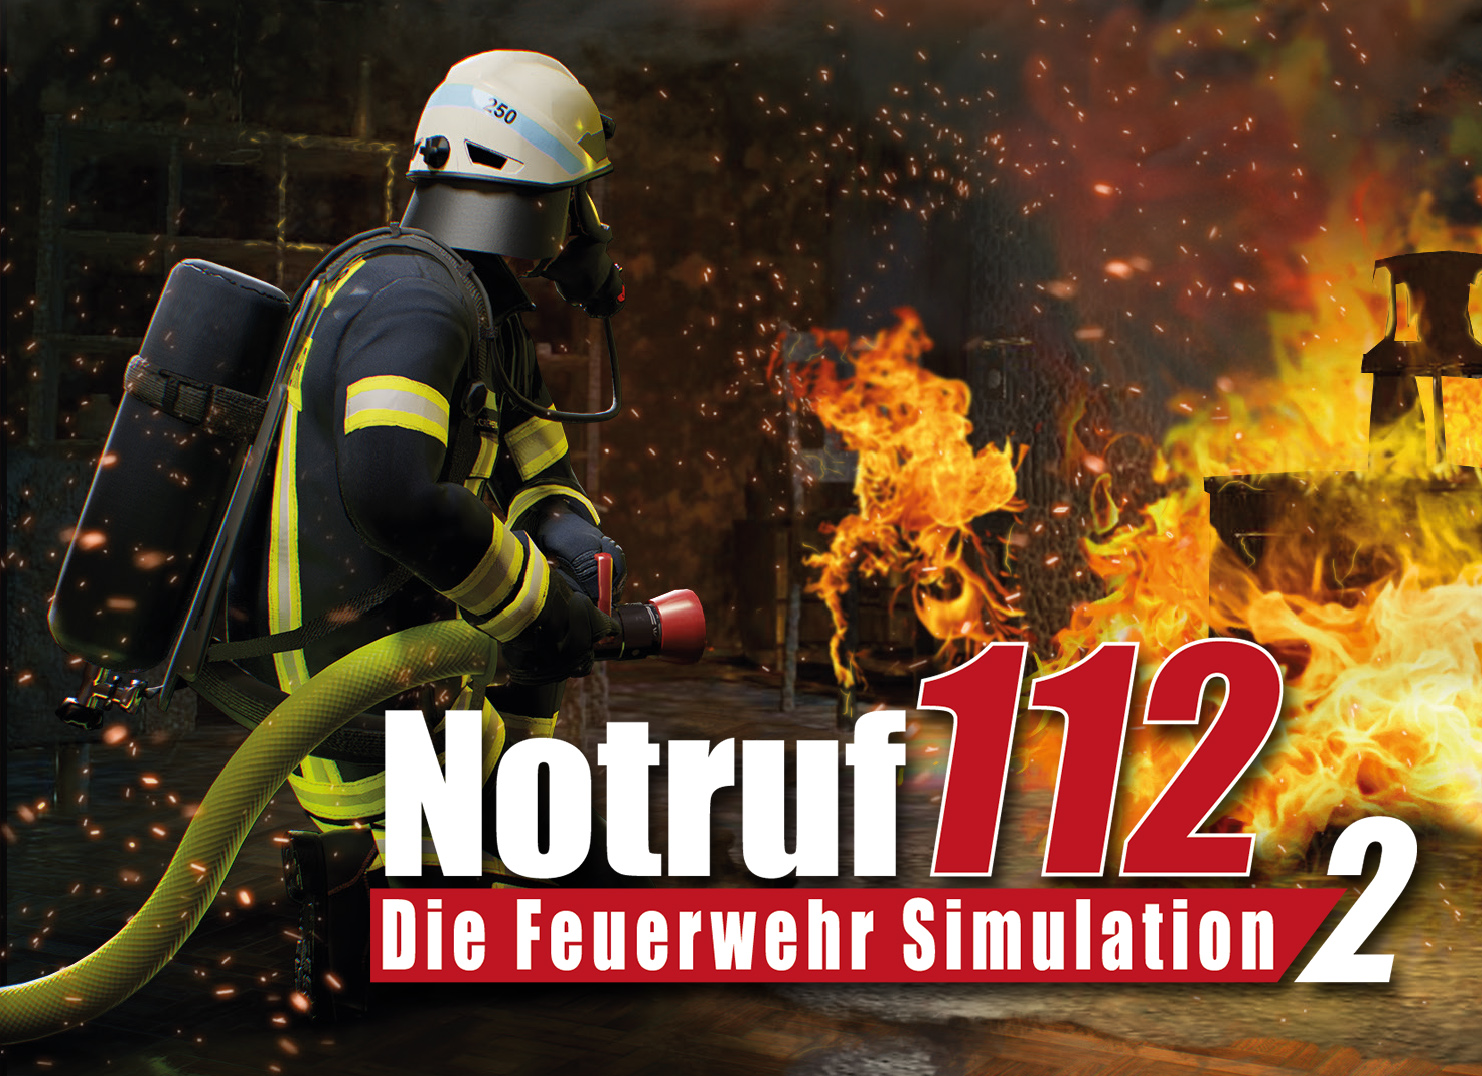 Feuerwehr so nie: – März DIE SIMULATION 112 startet real NOTRUF wie im GENtv – 2 noch FEUERWEHR